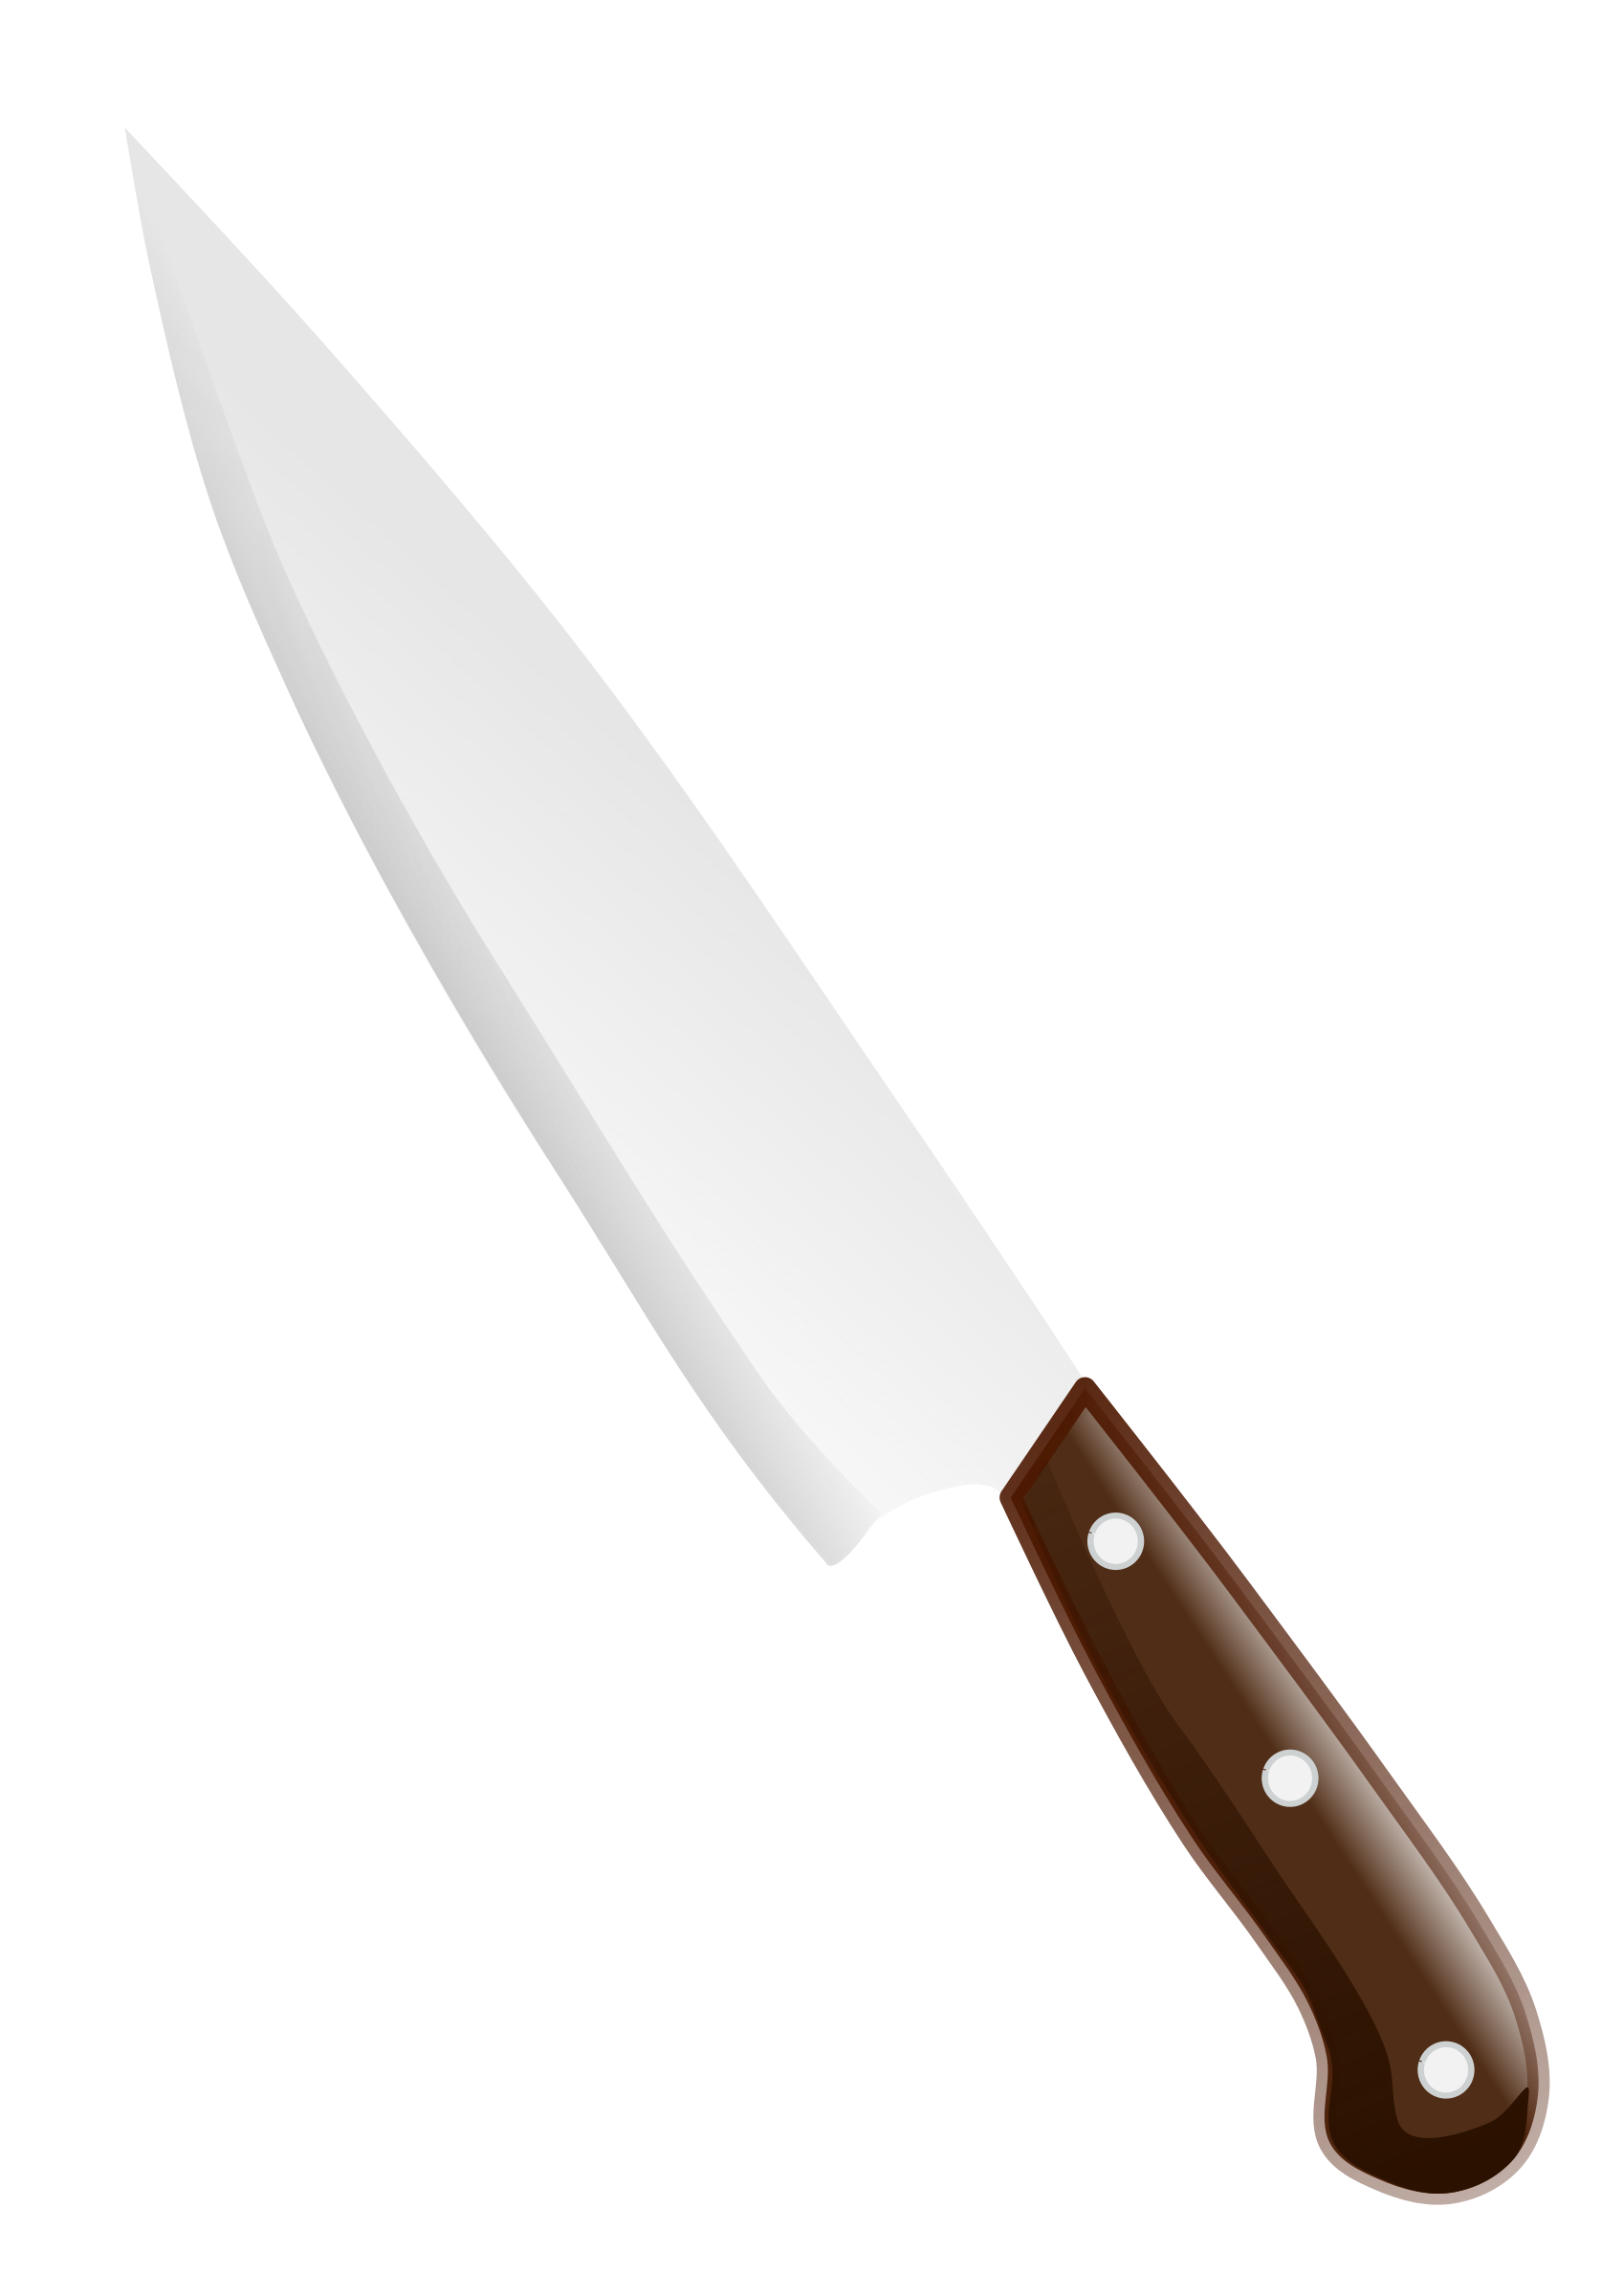 Knife sharp object